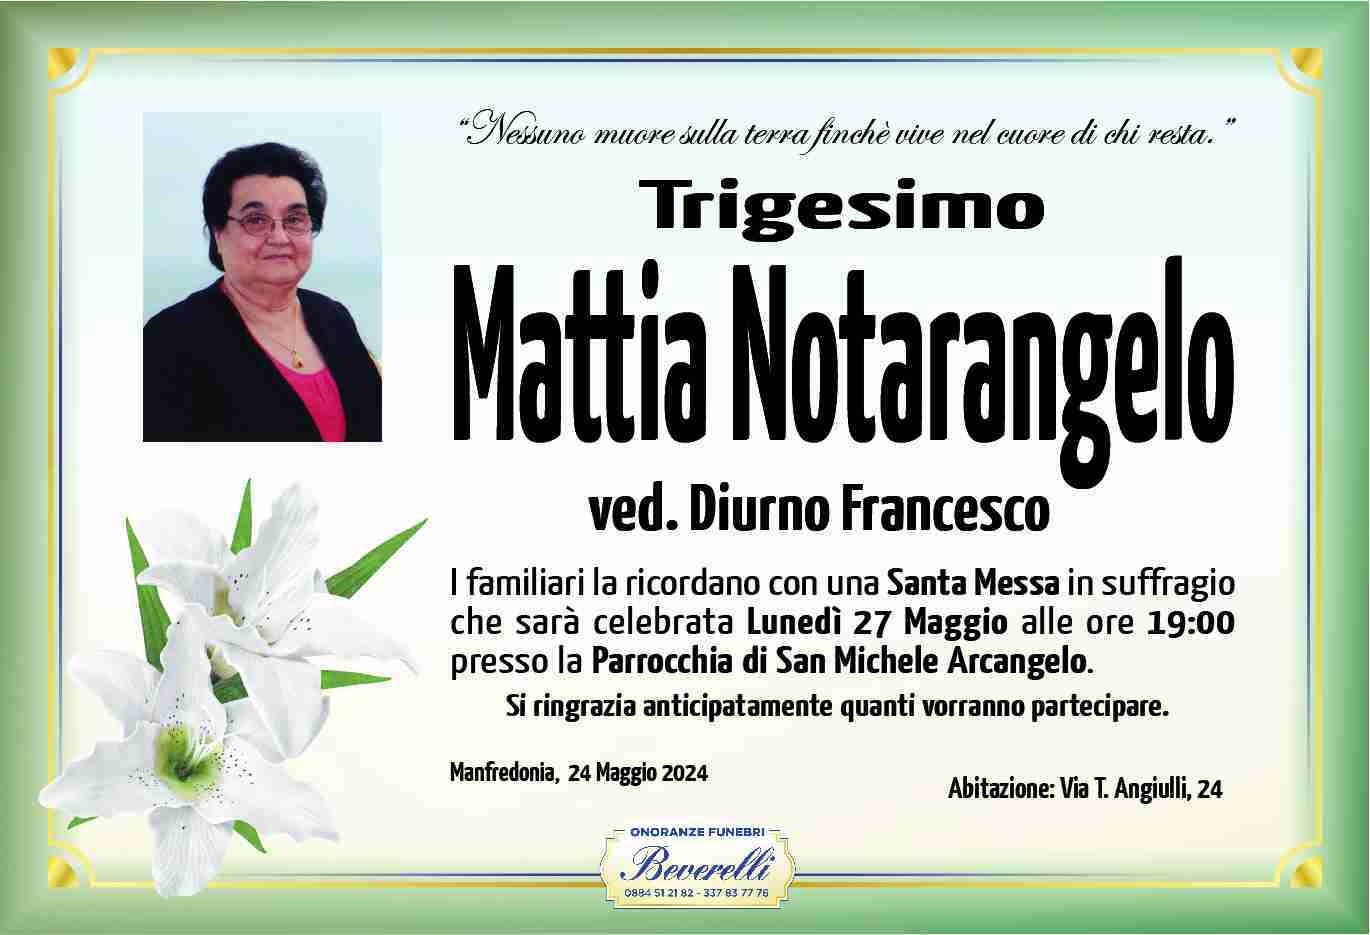 Mattia Notarangelo